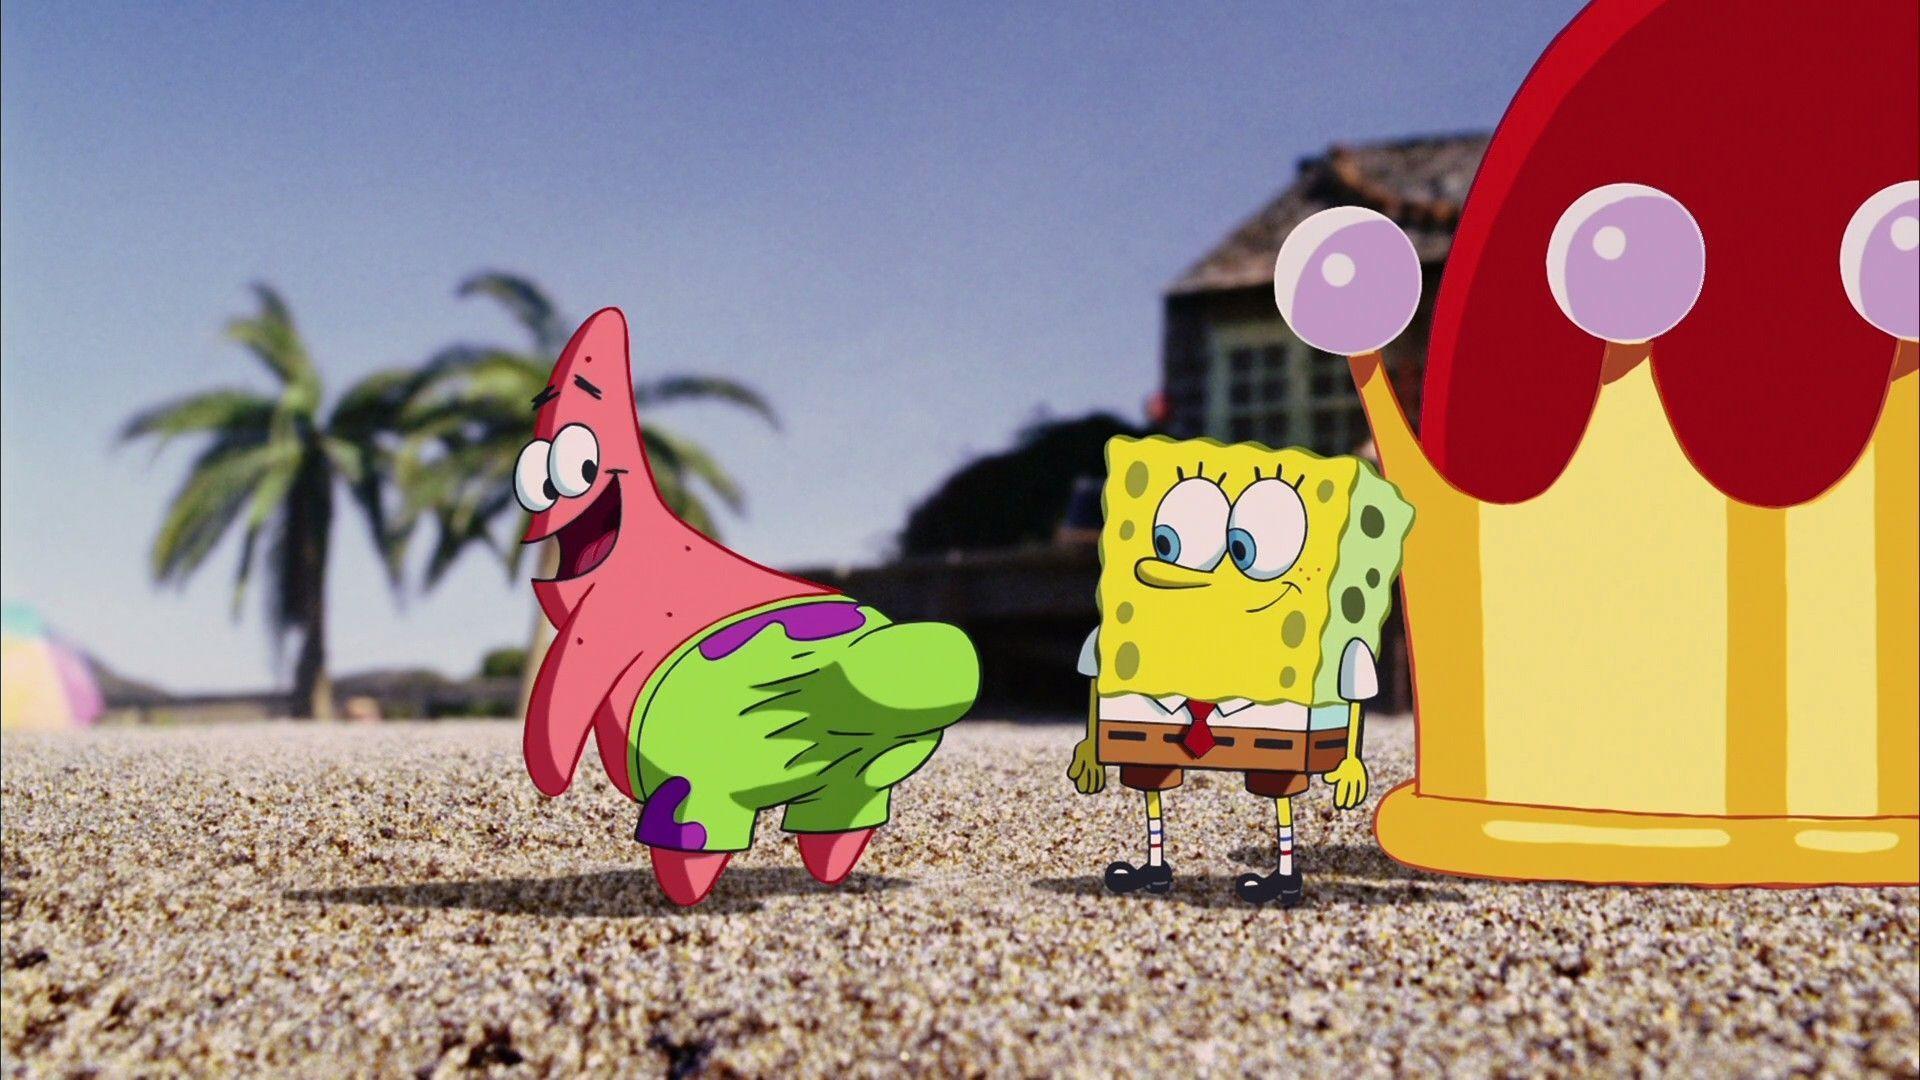 Spongebob And Patrick Wallpaper. Foolhardi